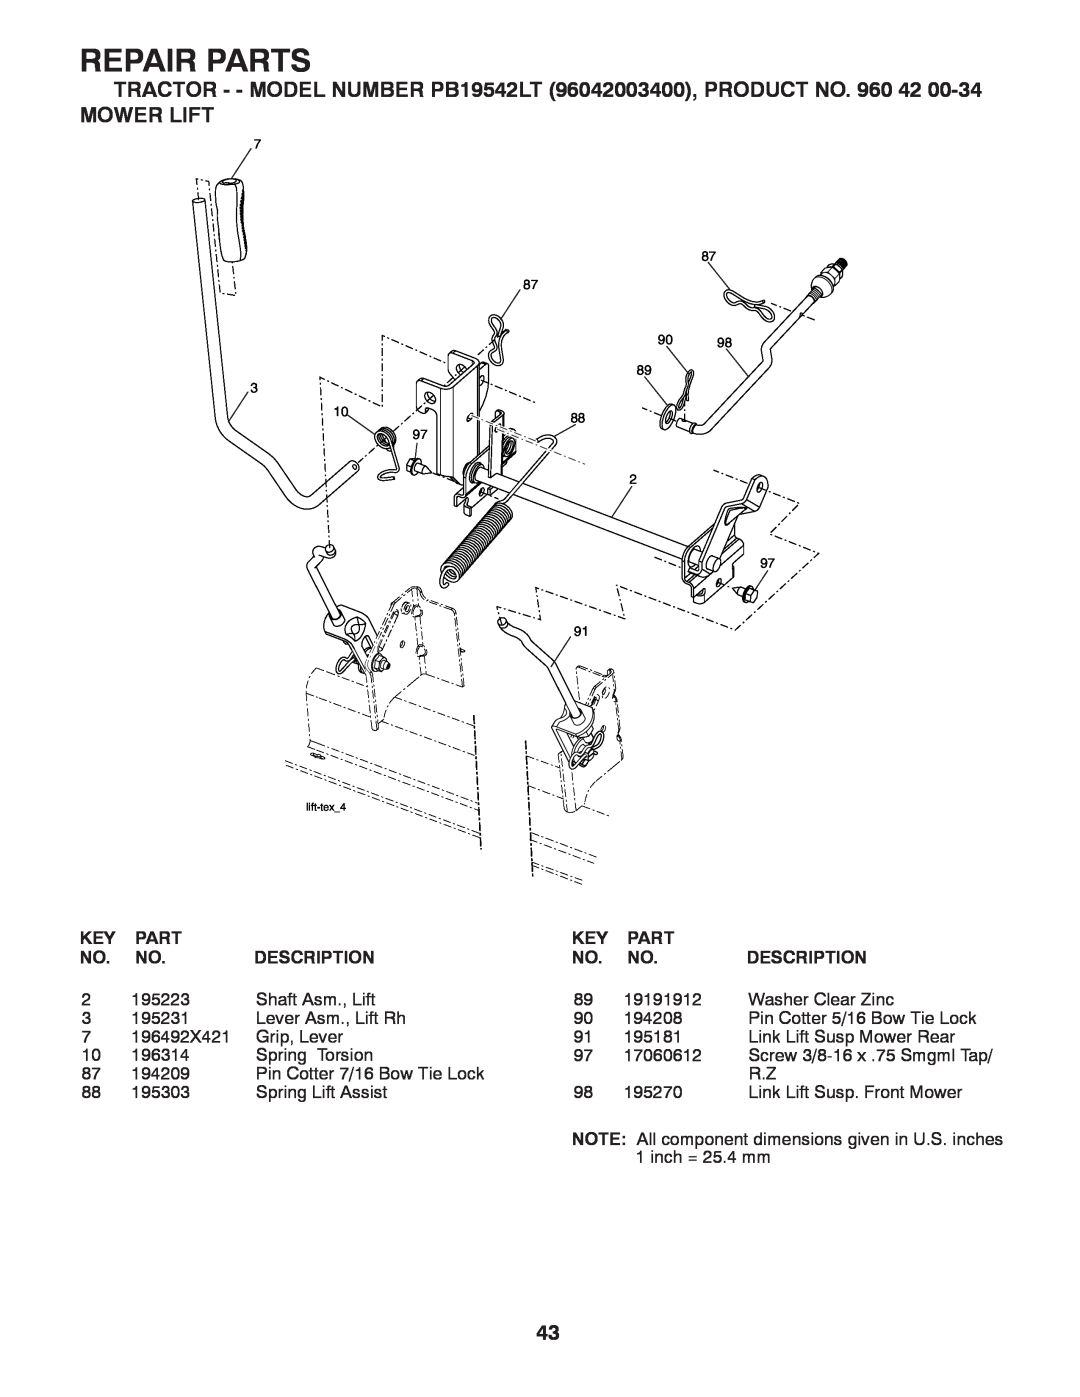 Poulan manual Mower Lift, Repair Parts, TRACTOR - - MODEL NUMBER PB19542LT 96042003400, PRODUCT NO. 960 42, Description 